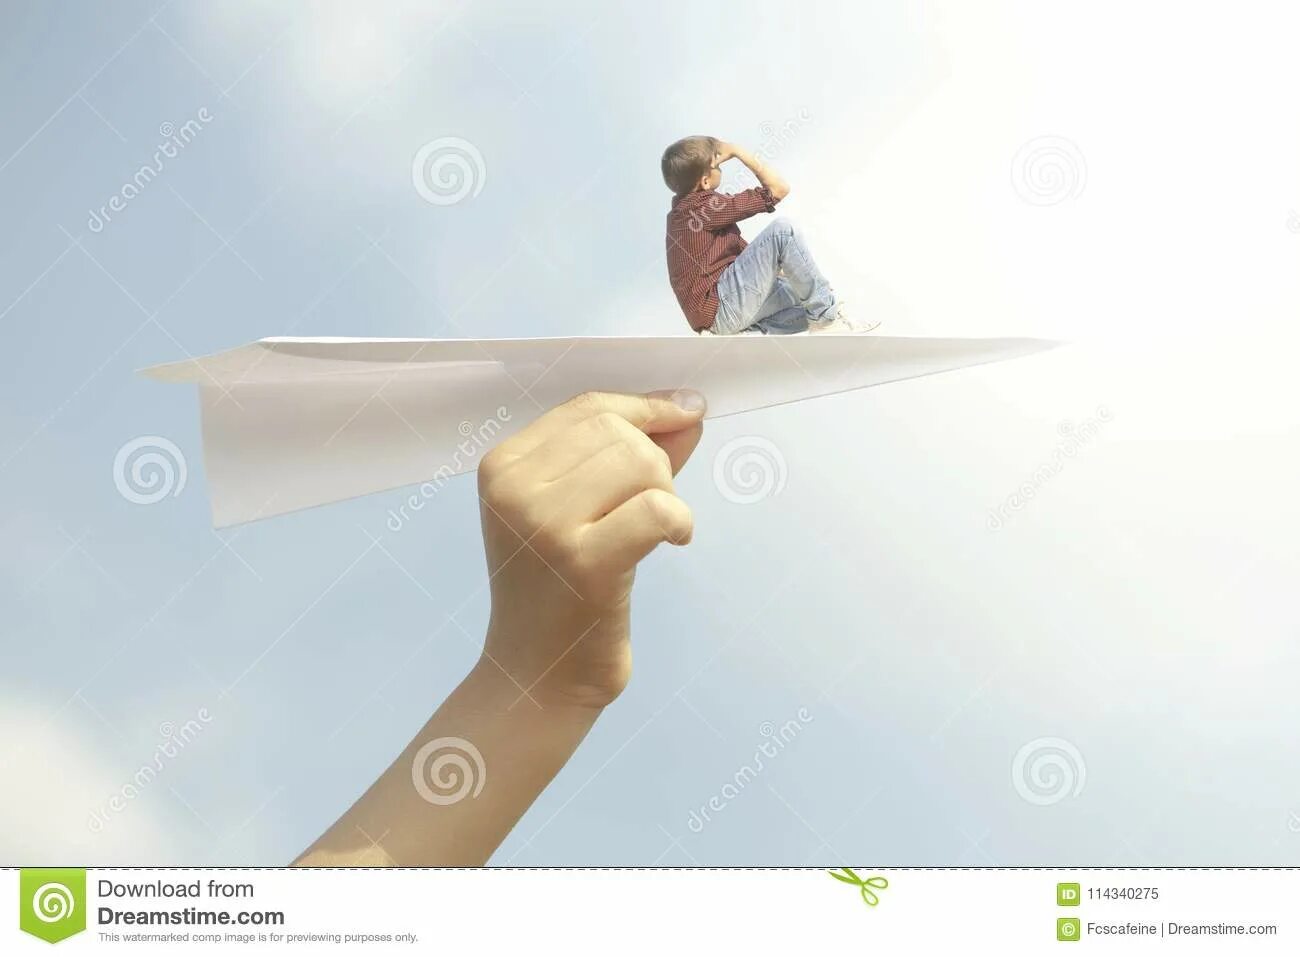 Над бумажным над листом. Девушка с бумажным самолетиком. Бумажный самолётик в мужской руке. Бумажный самолет влетает в окно. Фотосессия в студии с большим бумажным самолетиком в руках.